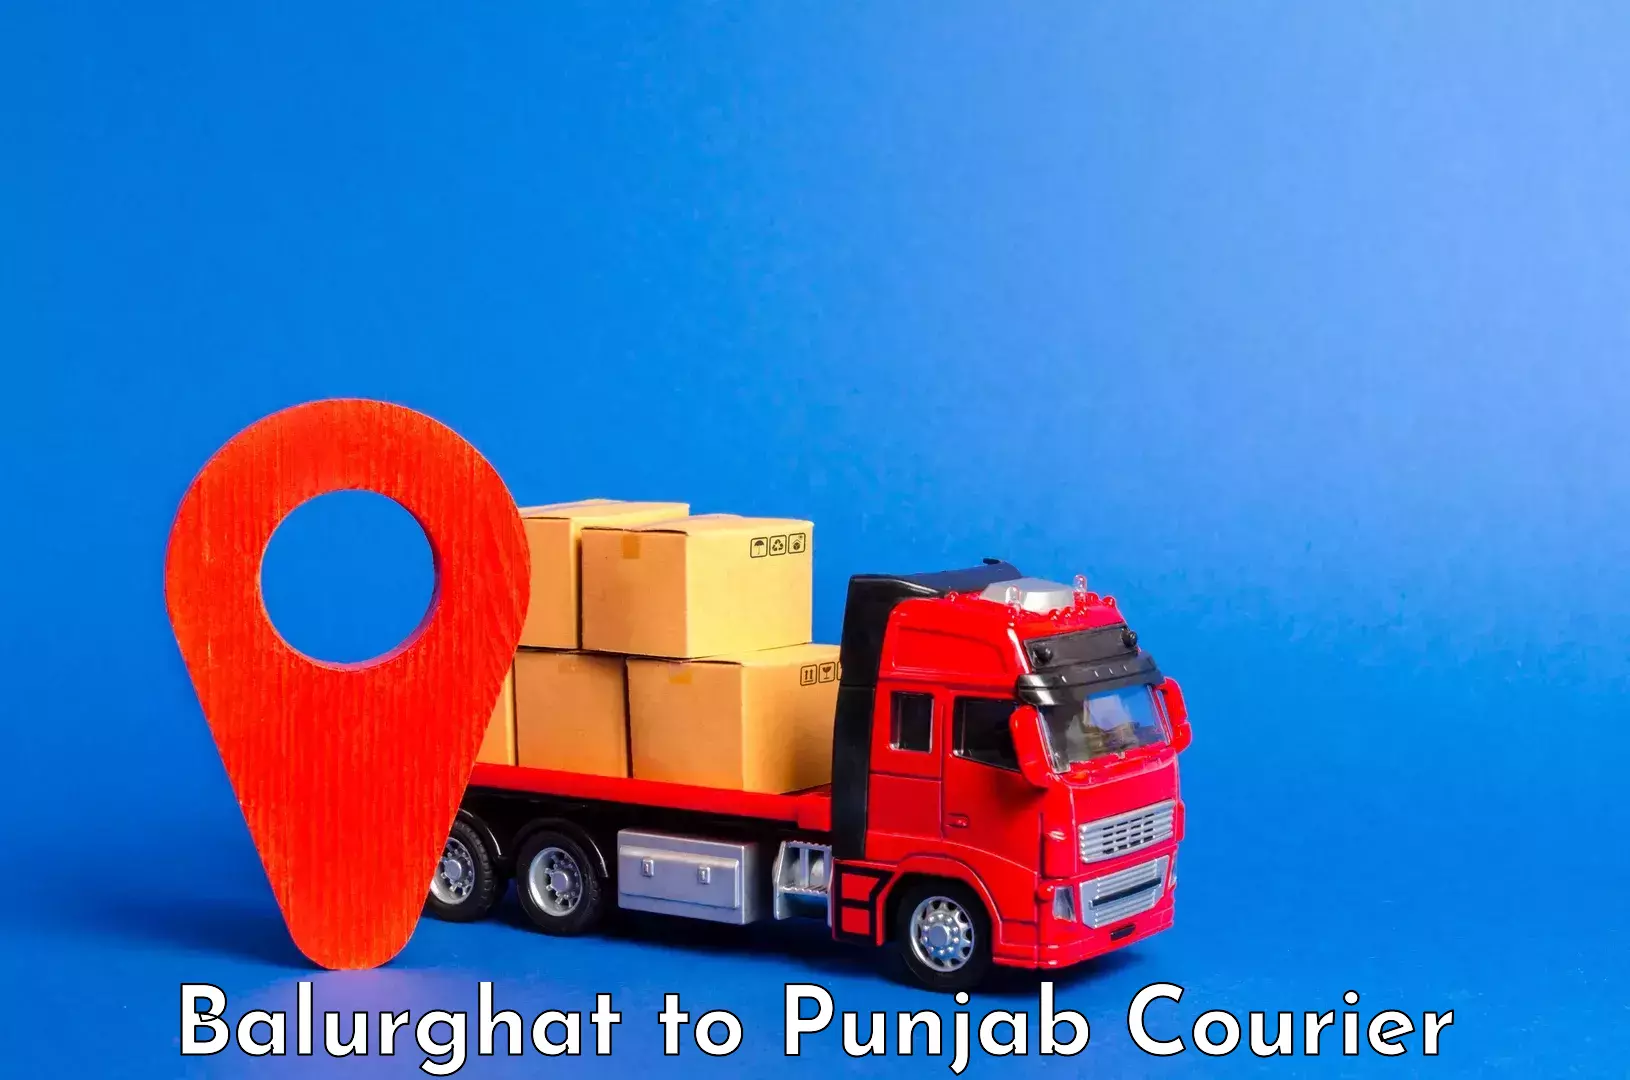 Automated luggage transport Balurghat to Punjab